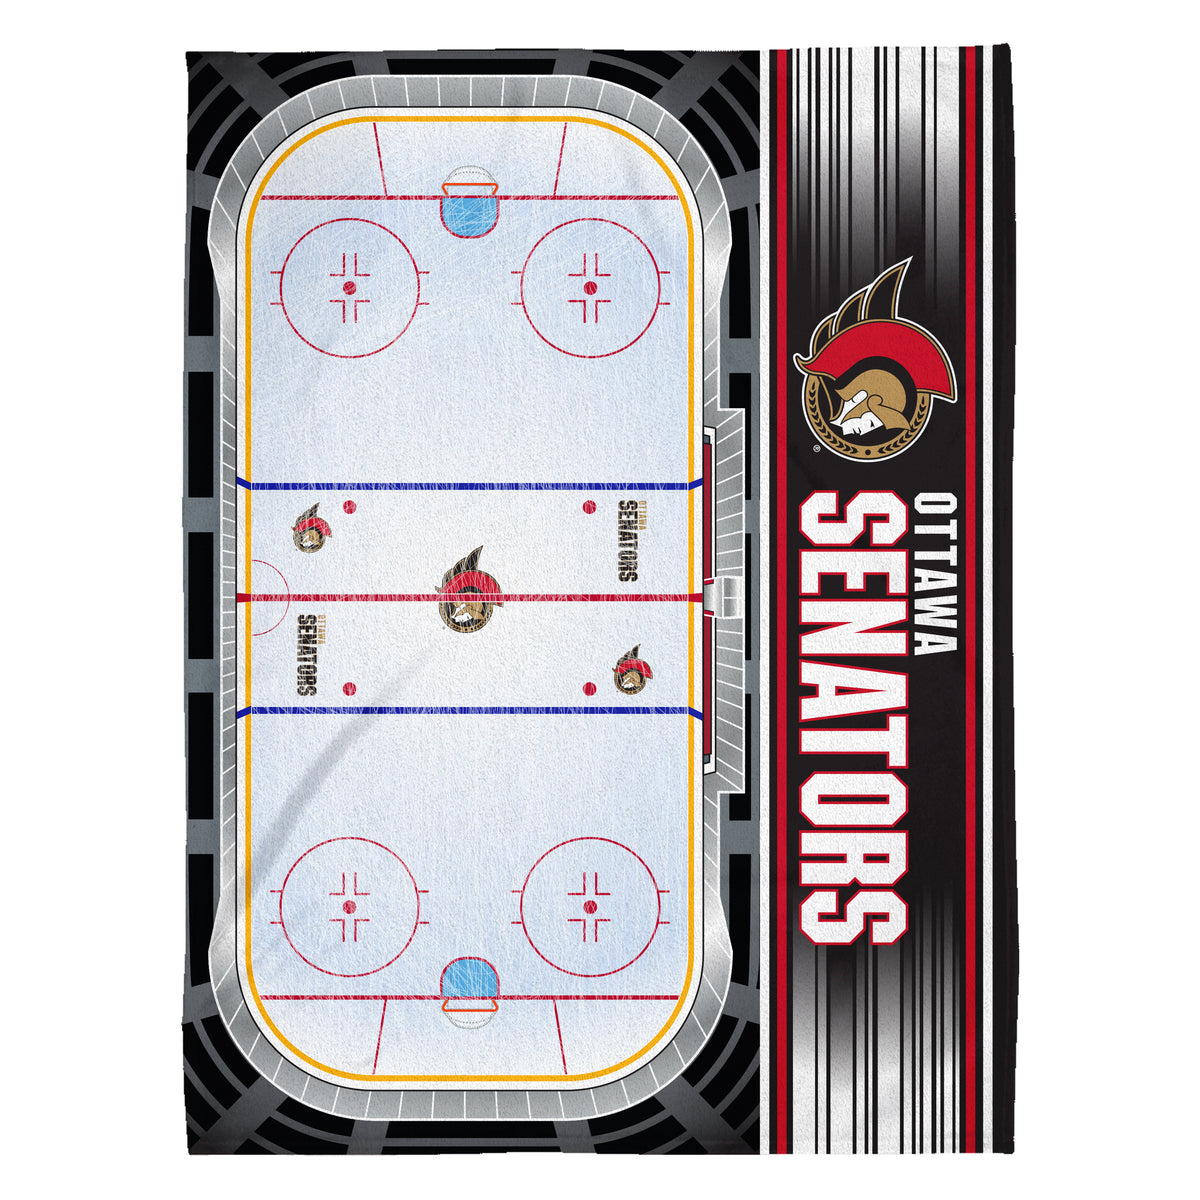 Ottawa Senators Home Ice 60” x 80” Raschel Plush Blanket